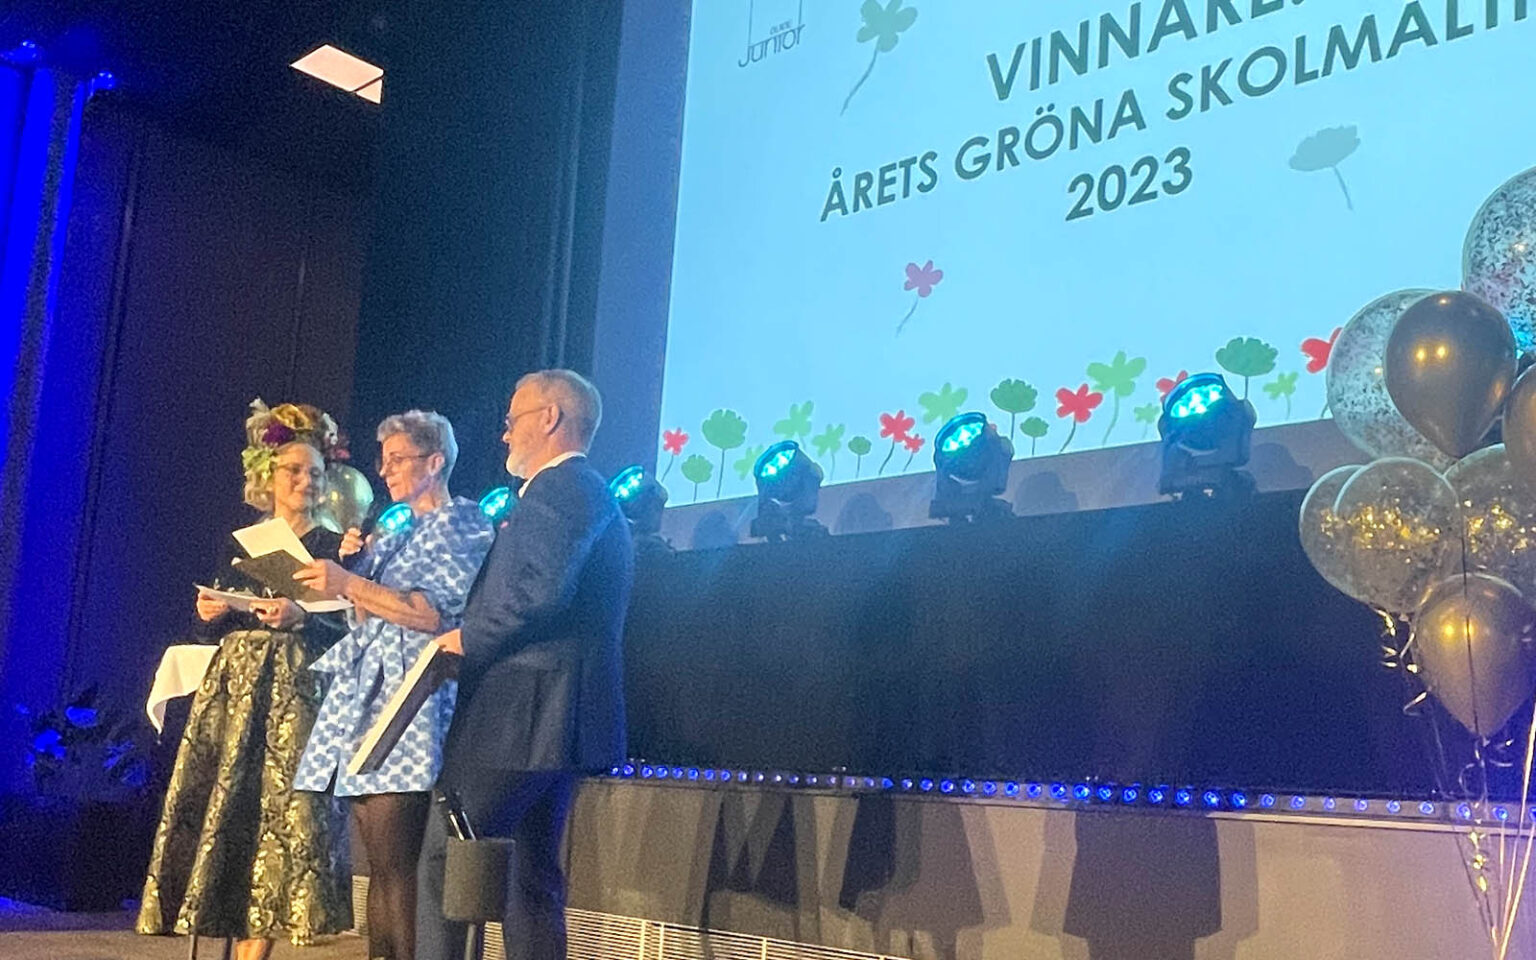 Ann och Göran på scenen och presenterar vinnarna av Årets Gröna Skolmåltid 2023.